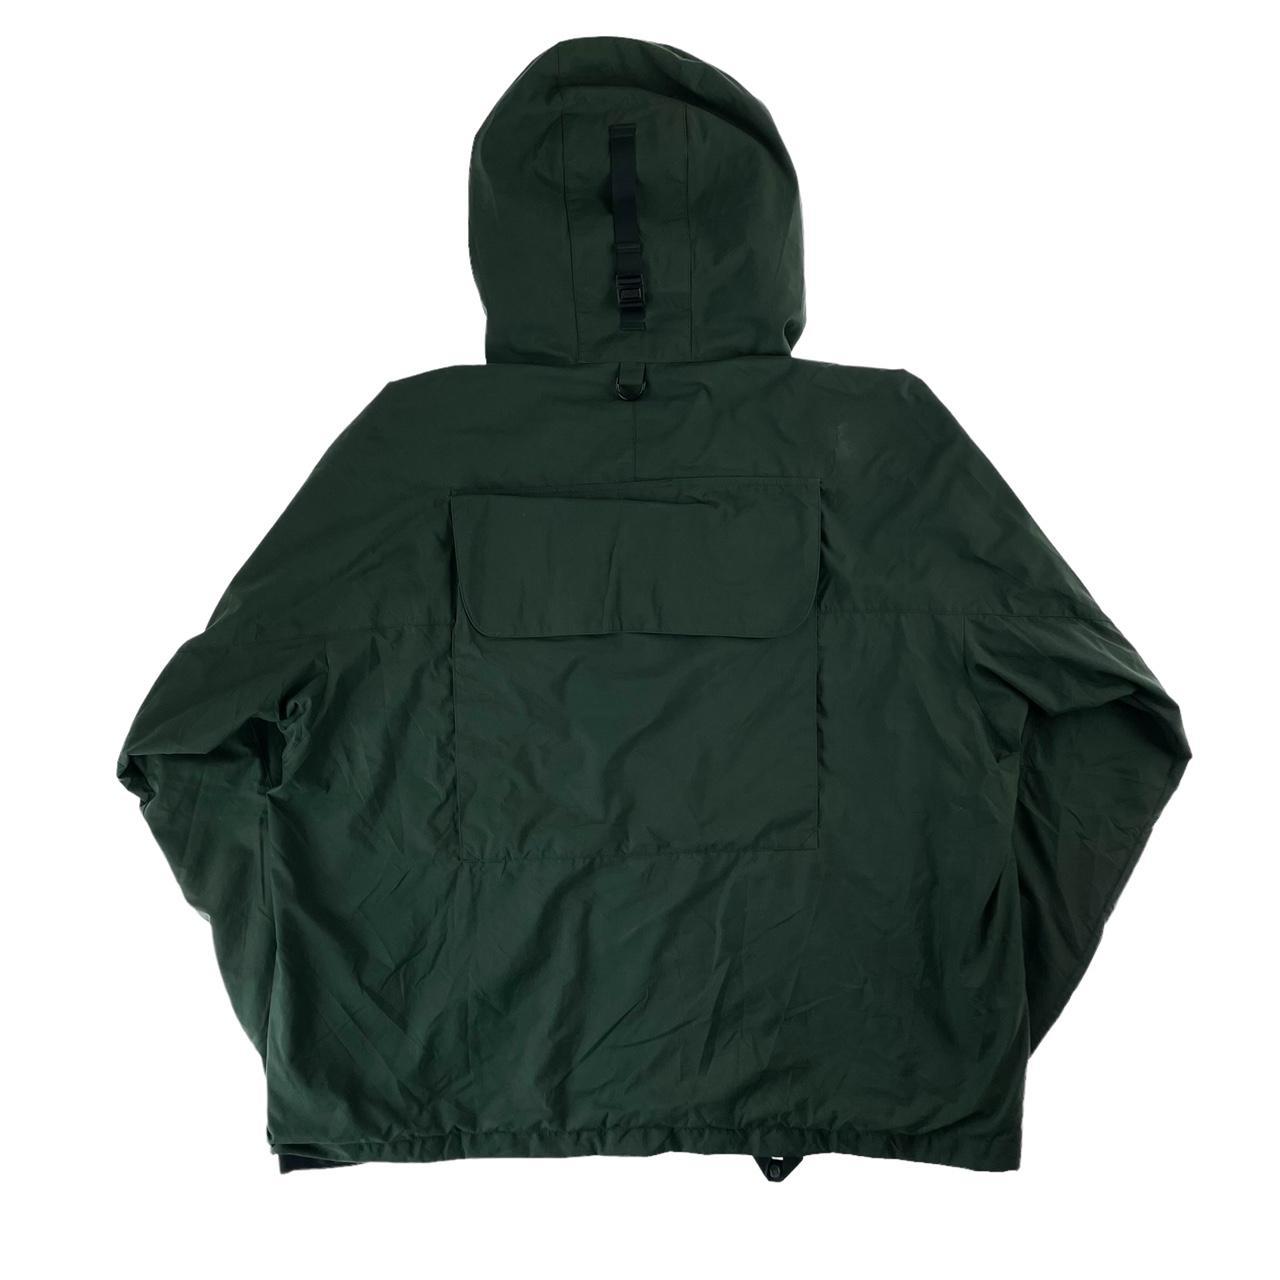 Vintage Patagonia SST pocket jacket size... - Depop